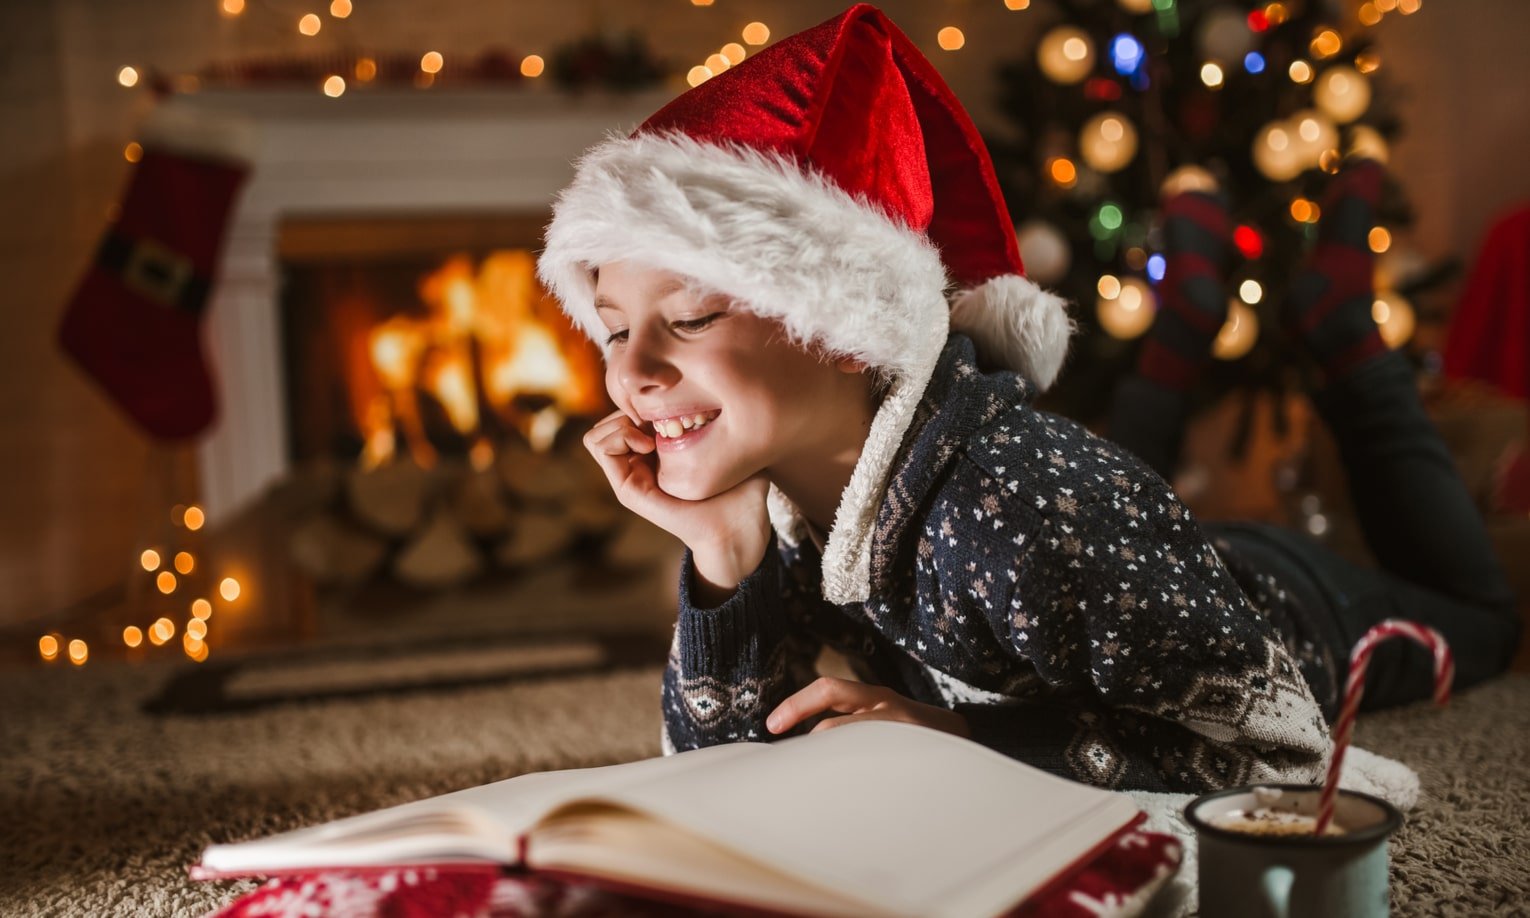 мальчик в рождественской одежде читает книгу у камина